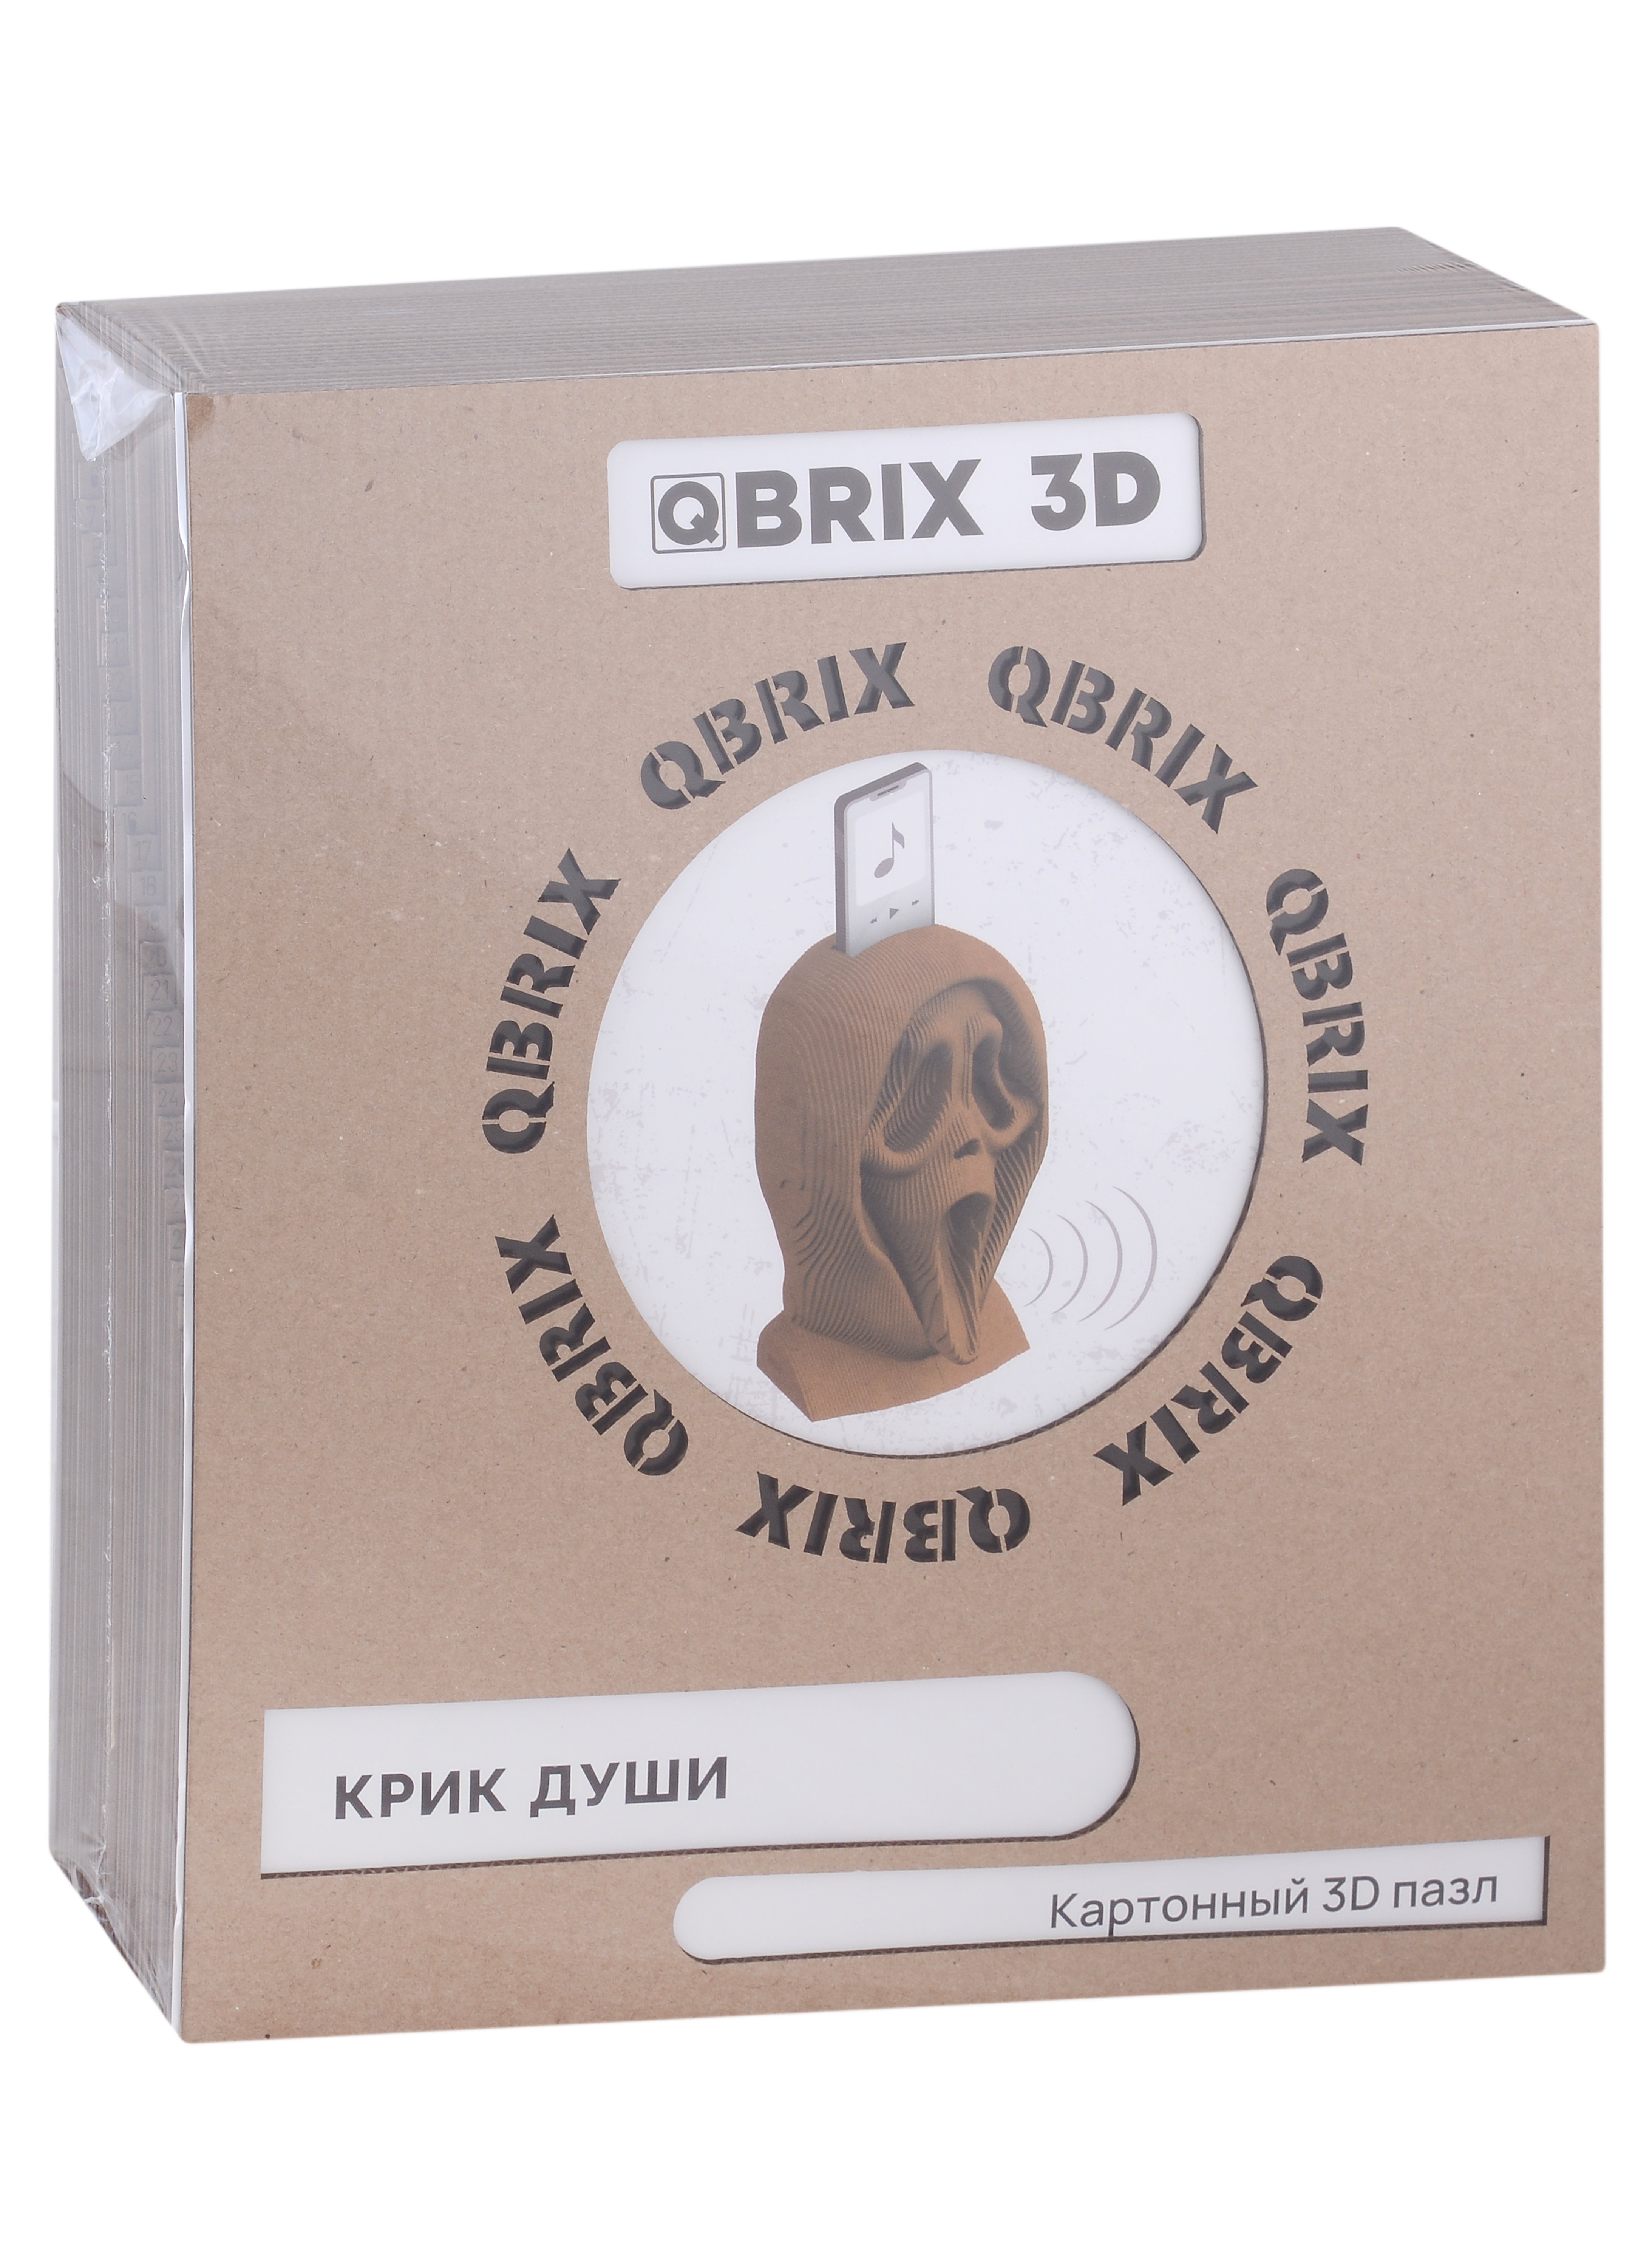 QBRIX  3D   